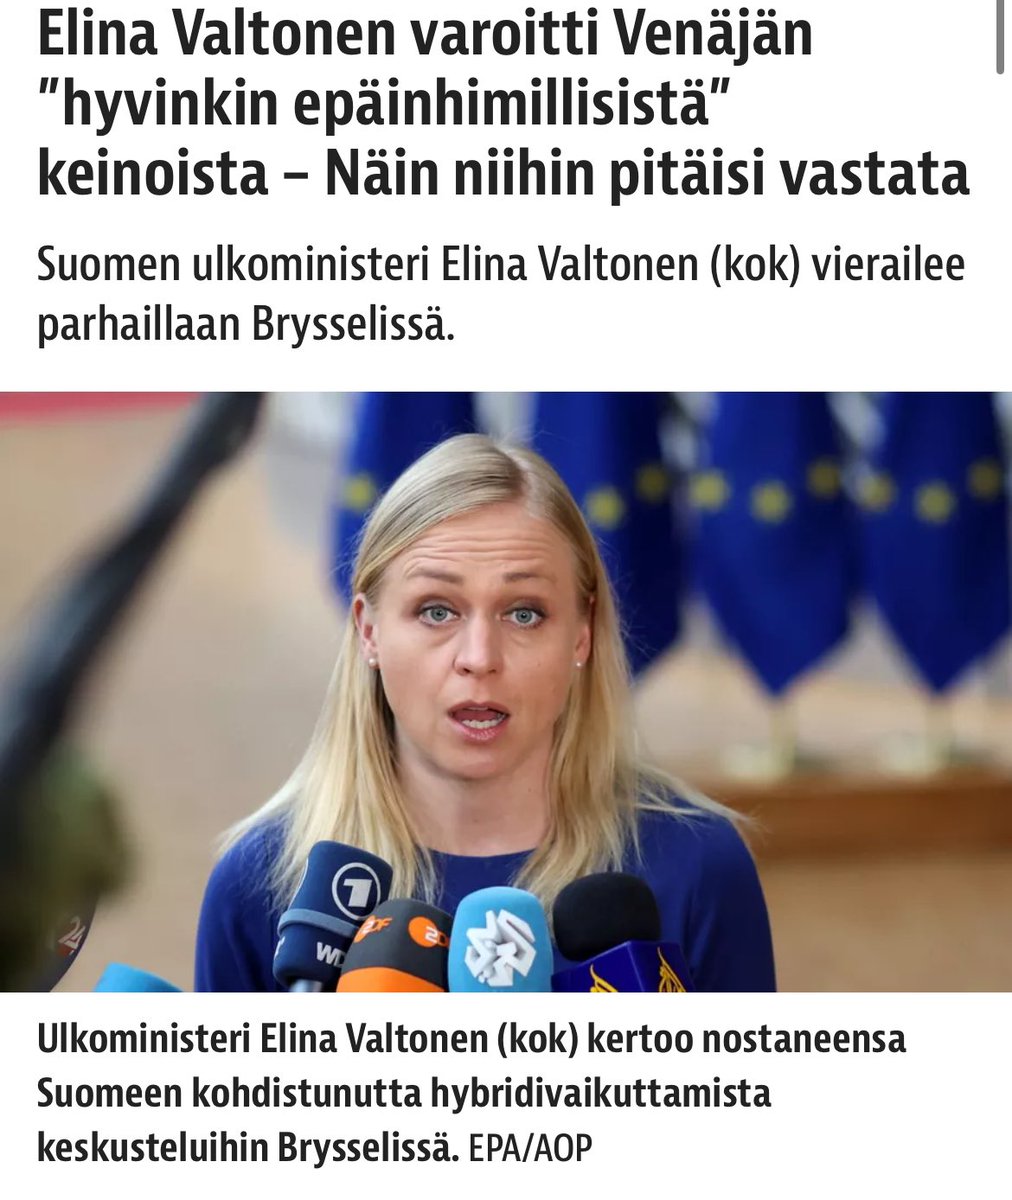 Oon nähnyt @iltalehti_fi n käyttävät tätä kuvaa Valtosesta useampaan kertaan.

Mitäköhän tällä halutaan viestiä? On ihan turha väittää ettei mitään, koska sitähän ei usko kukaan.

Luulisi, että ministeristä olisi edustavampiakin kuvia käytettäväksi kuin tämä.